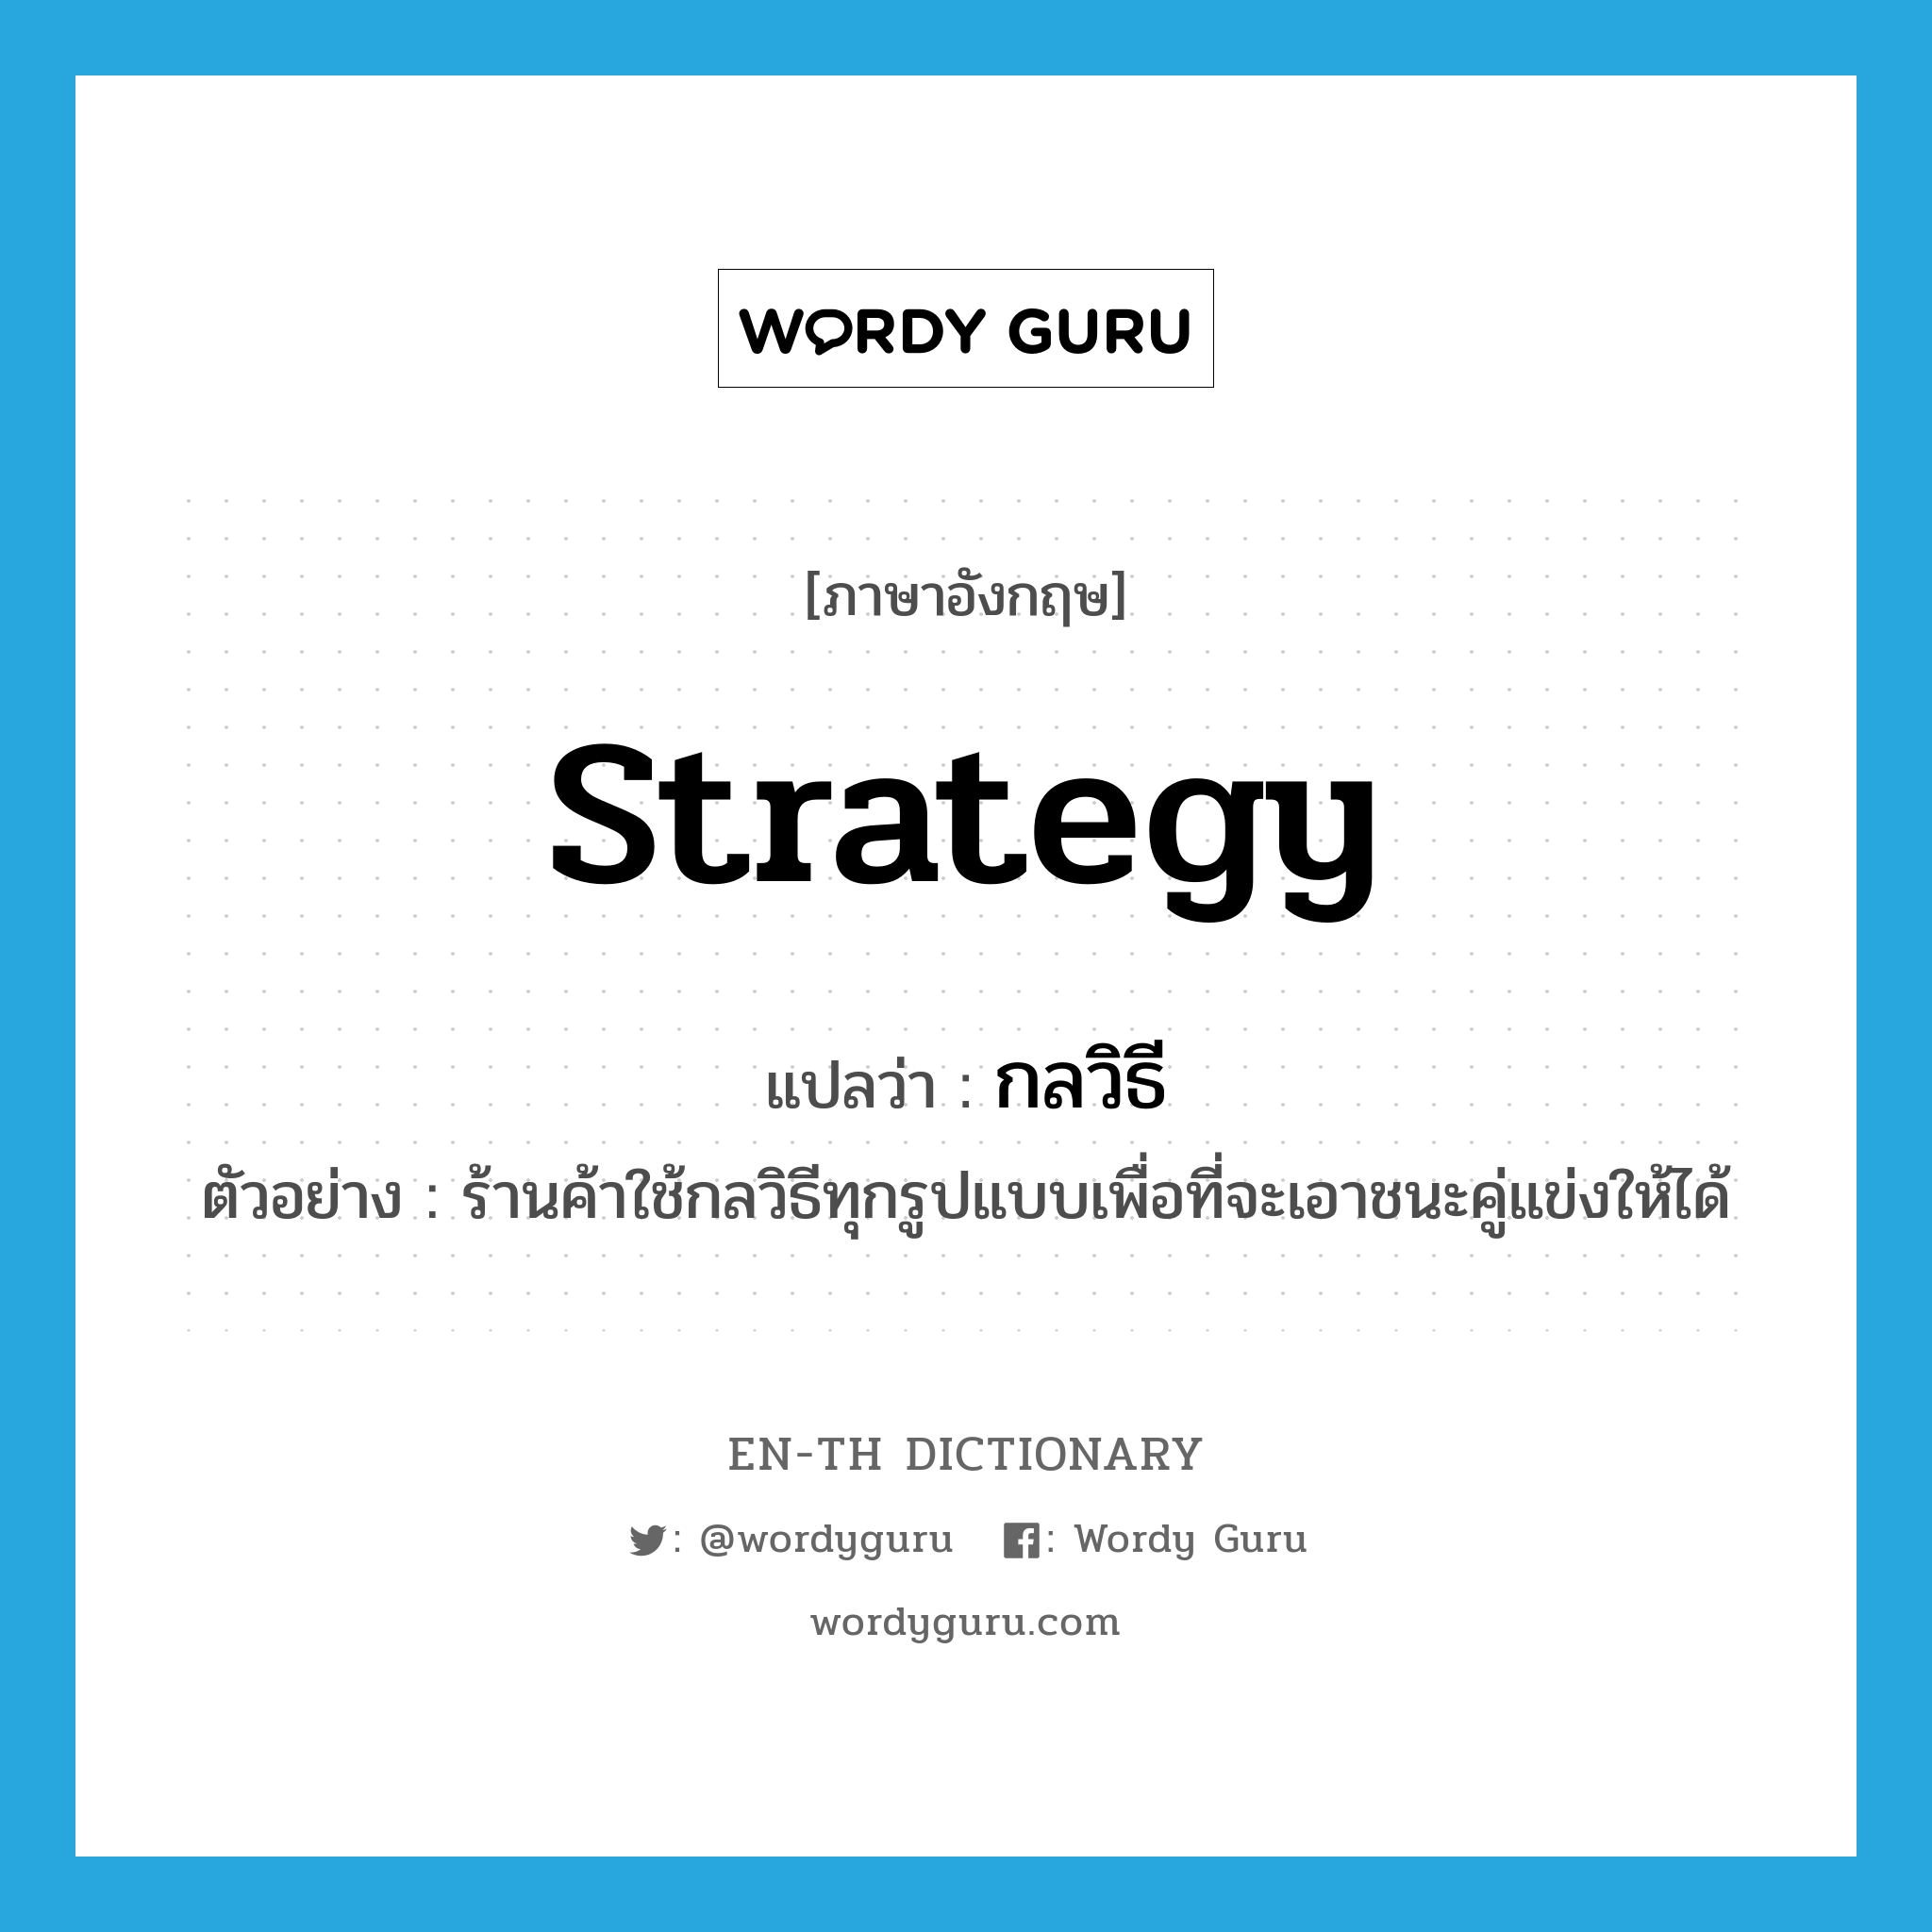 strategy แปลว่า?, คำศัพท์ภาษาอังกฤษ strategy แปลว่า กลวิธี ประเภท N ตัวอย่าง ร้านค้าใช้กลวิธีทุกรูปแบบเพื่อที่จะเอาชนะคู่แข่งให้ได้ หมวด N